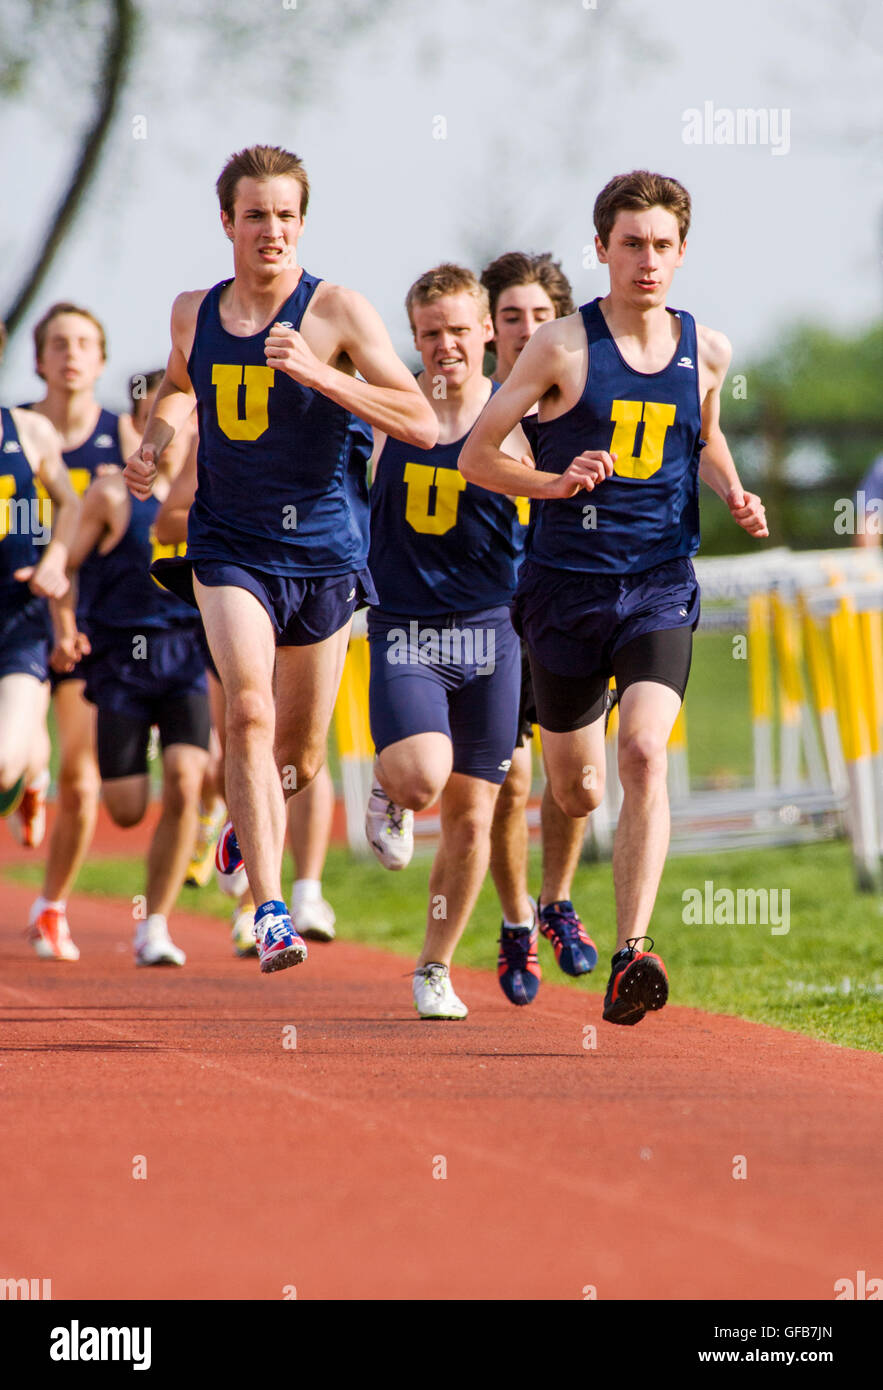 Los corredores compiten en la pista durante una high school Track & Field satisfacer. Foto de stock